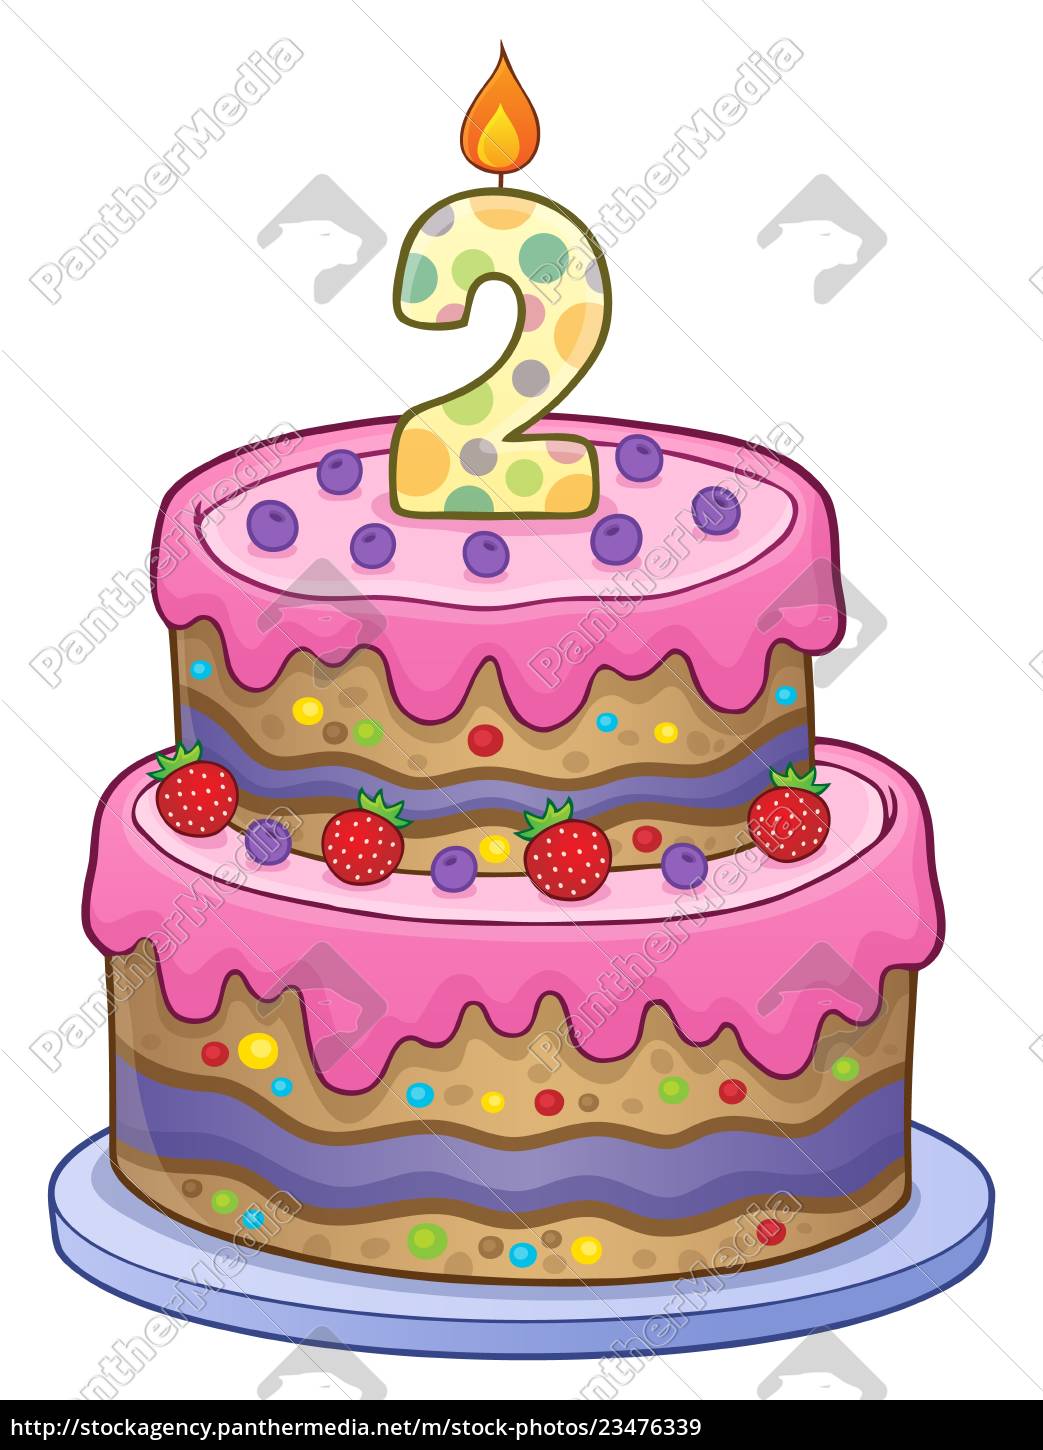 pastel de cumpleaños imagen de 2 años de edad - Foto de archivo #23476339